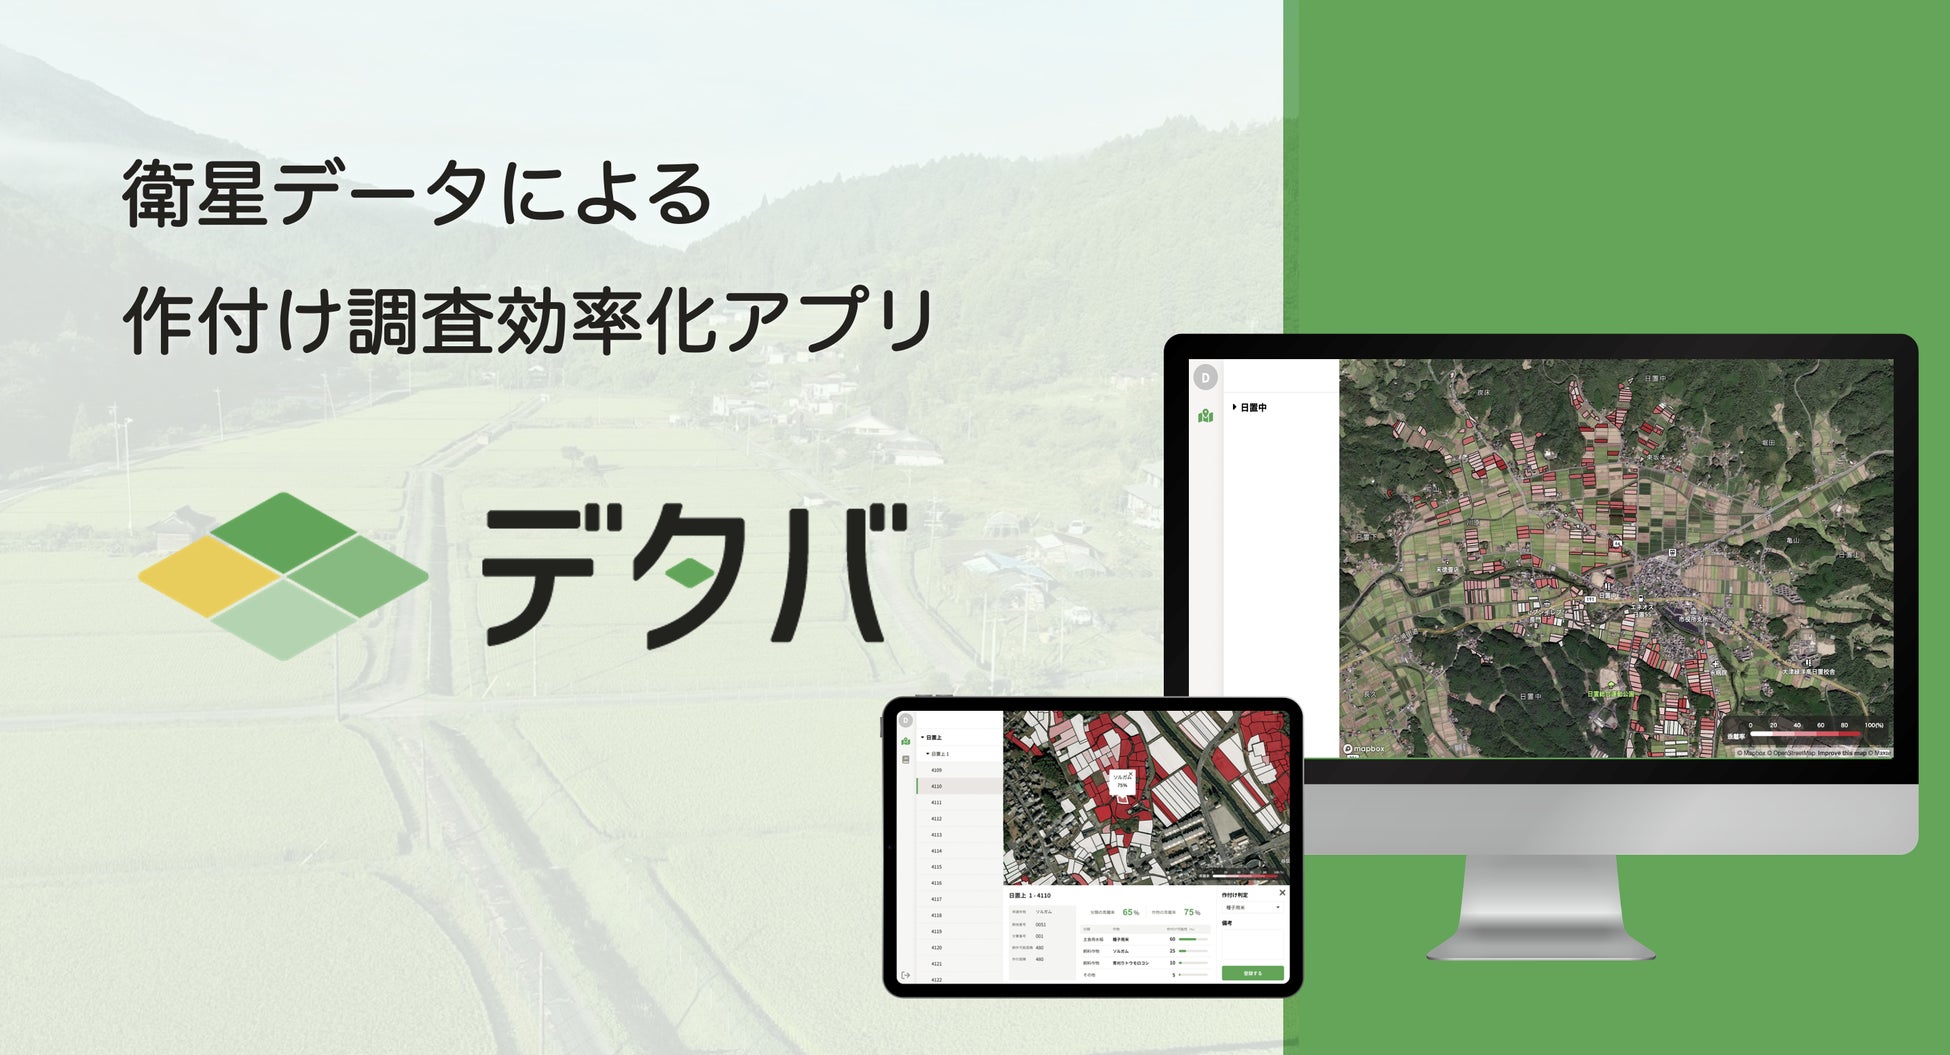 サグリの作付け調査効率化アプリ「デタバ」が、青森県大鰐町に全国初の導入決定のサブ画像2